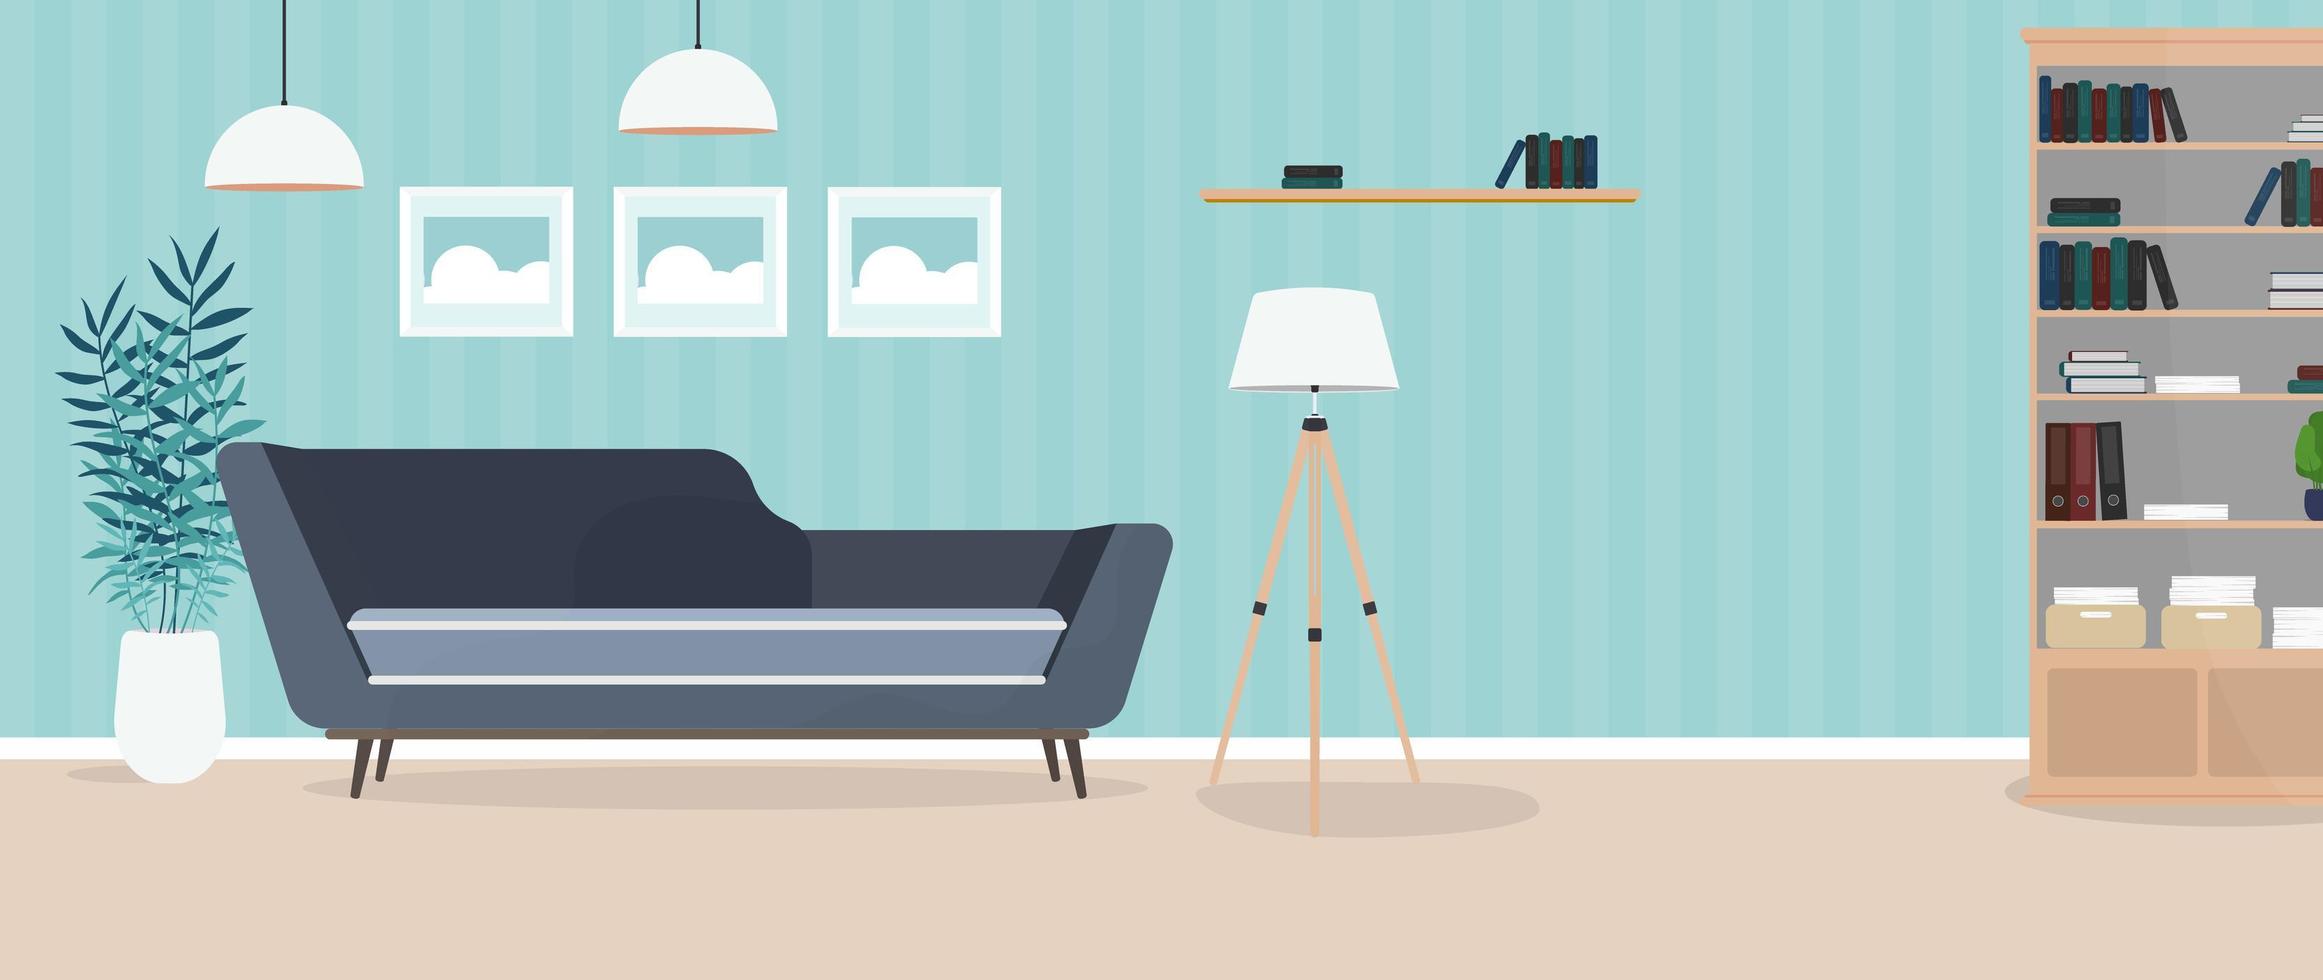 Habitación moderna y luminosa. Living comedor con sofá, placard, lámpara, cuadros. muebles. interior. vector. vector